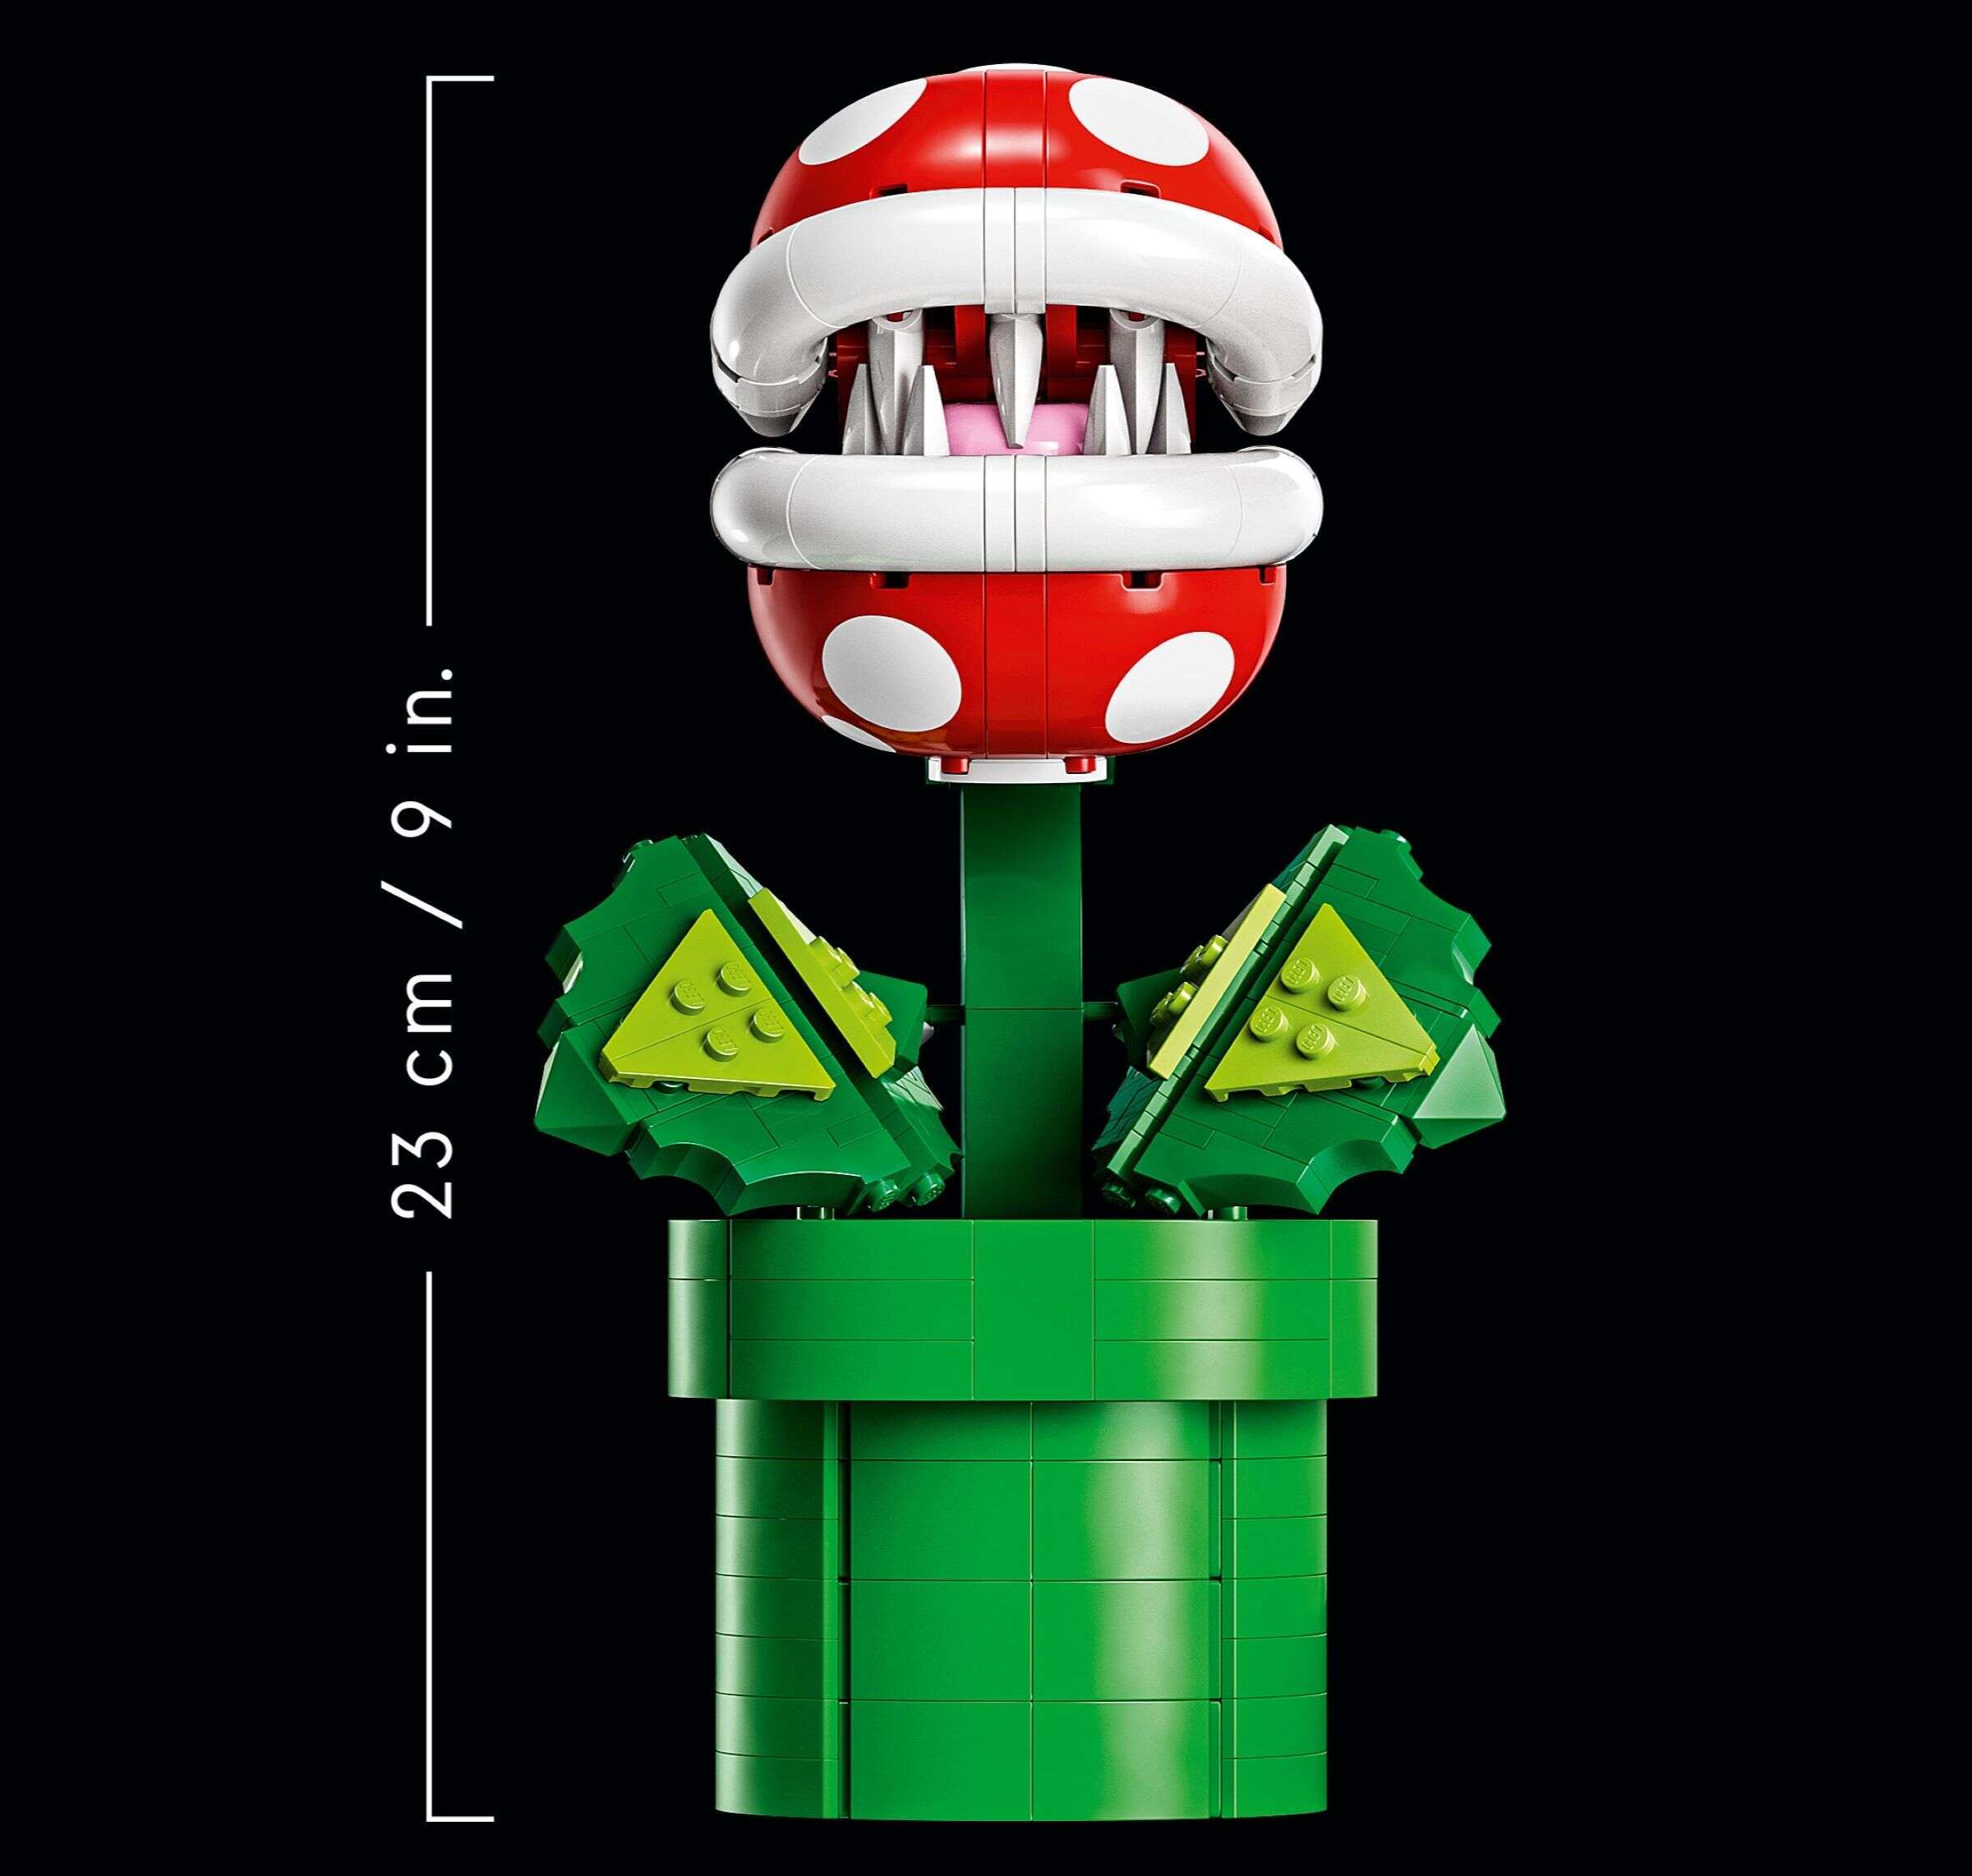 LEGO 71426 Super Mario Piranha-Pflanze, Bauen und Ausstellen, voll beweglich